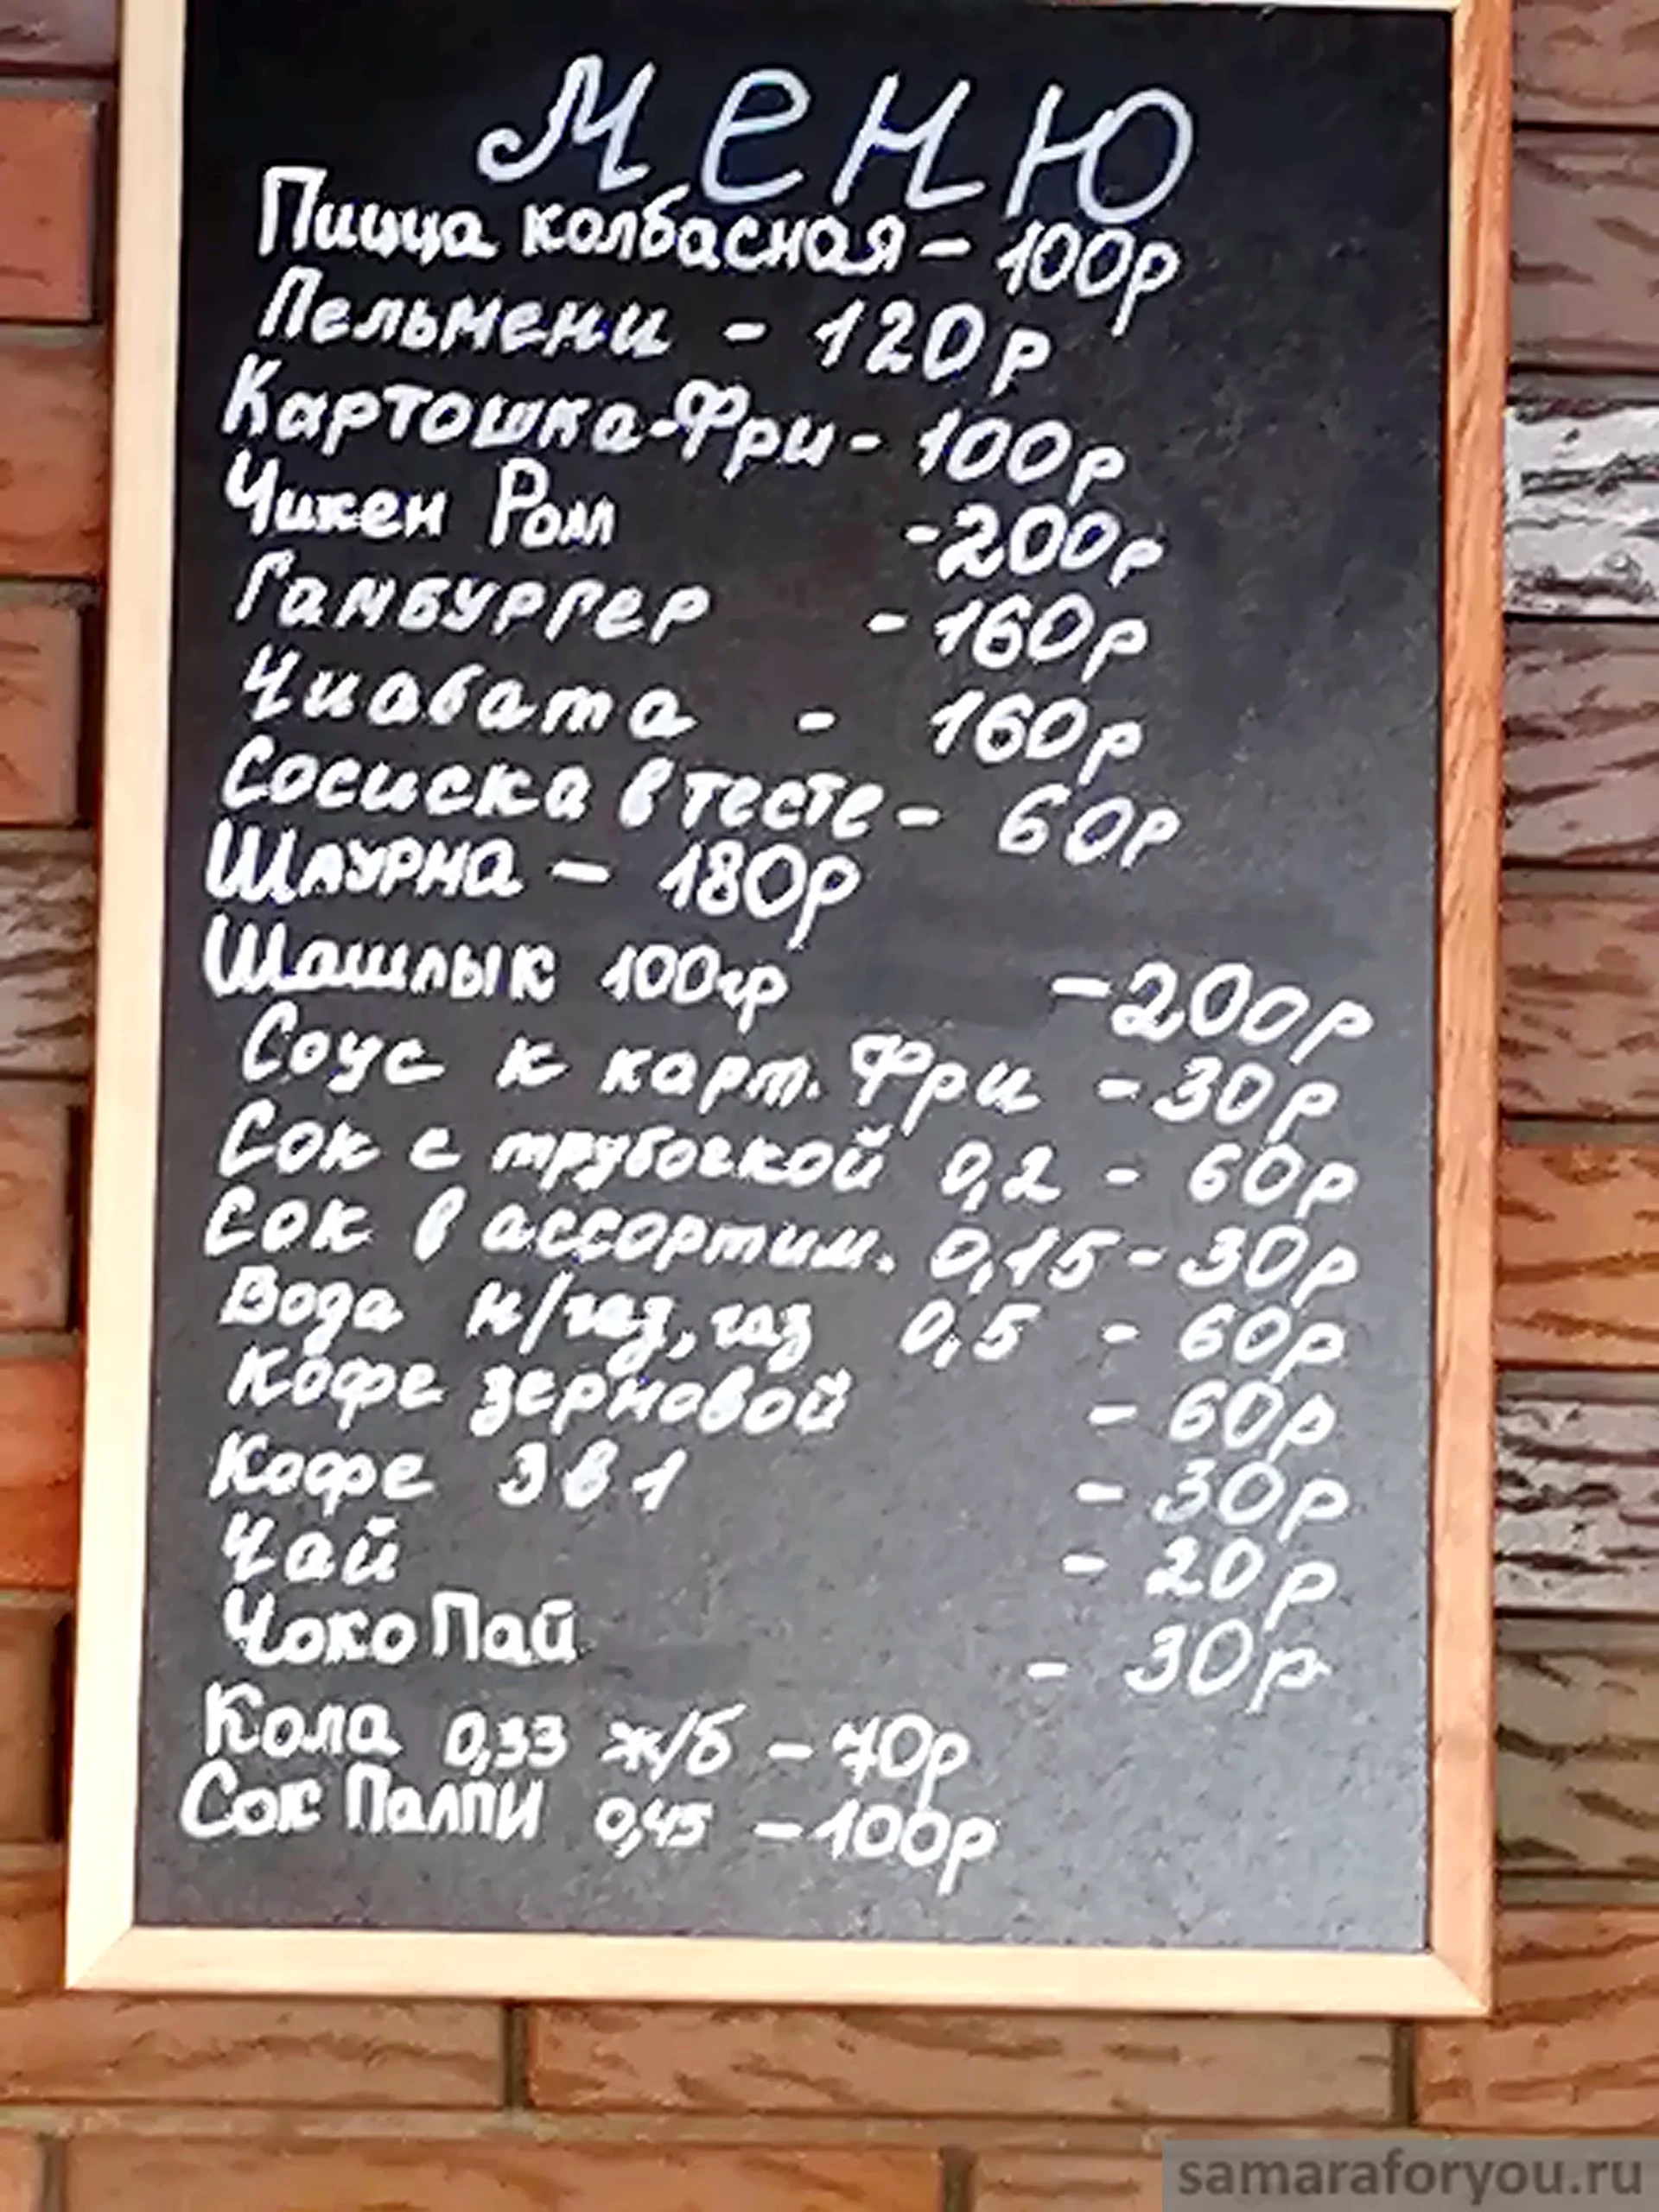 Меню кафе горнолыжного комплекса Сырт-гора